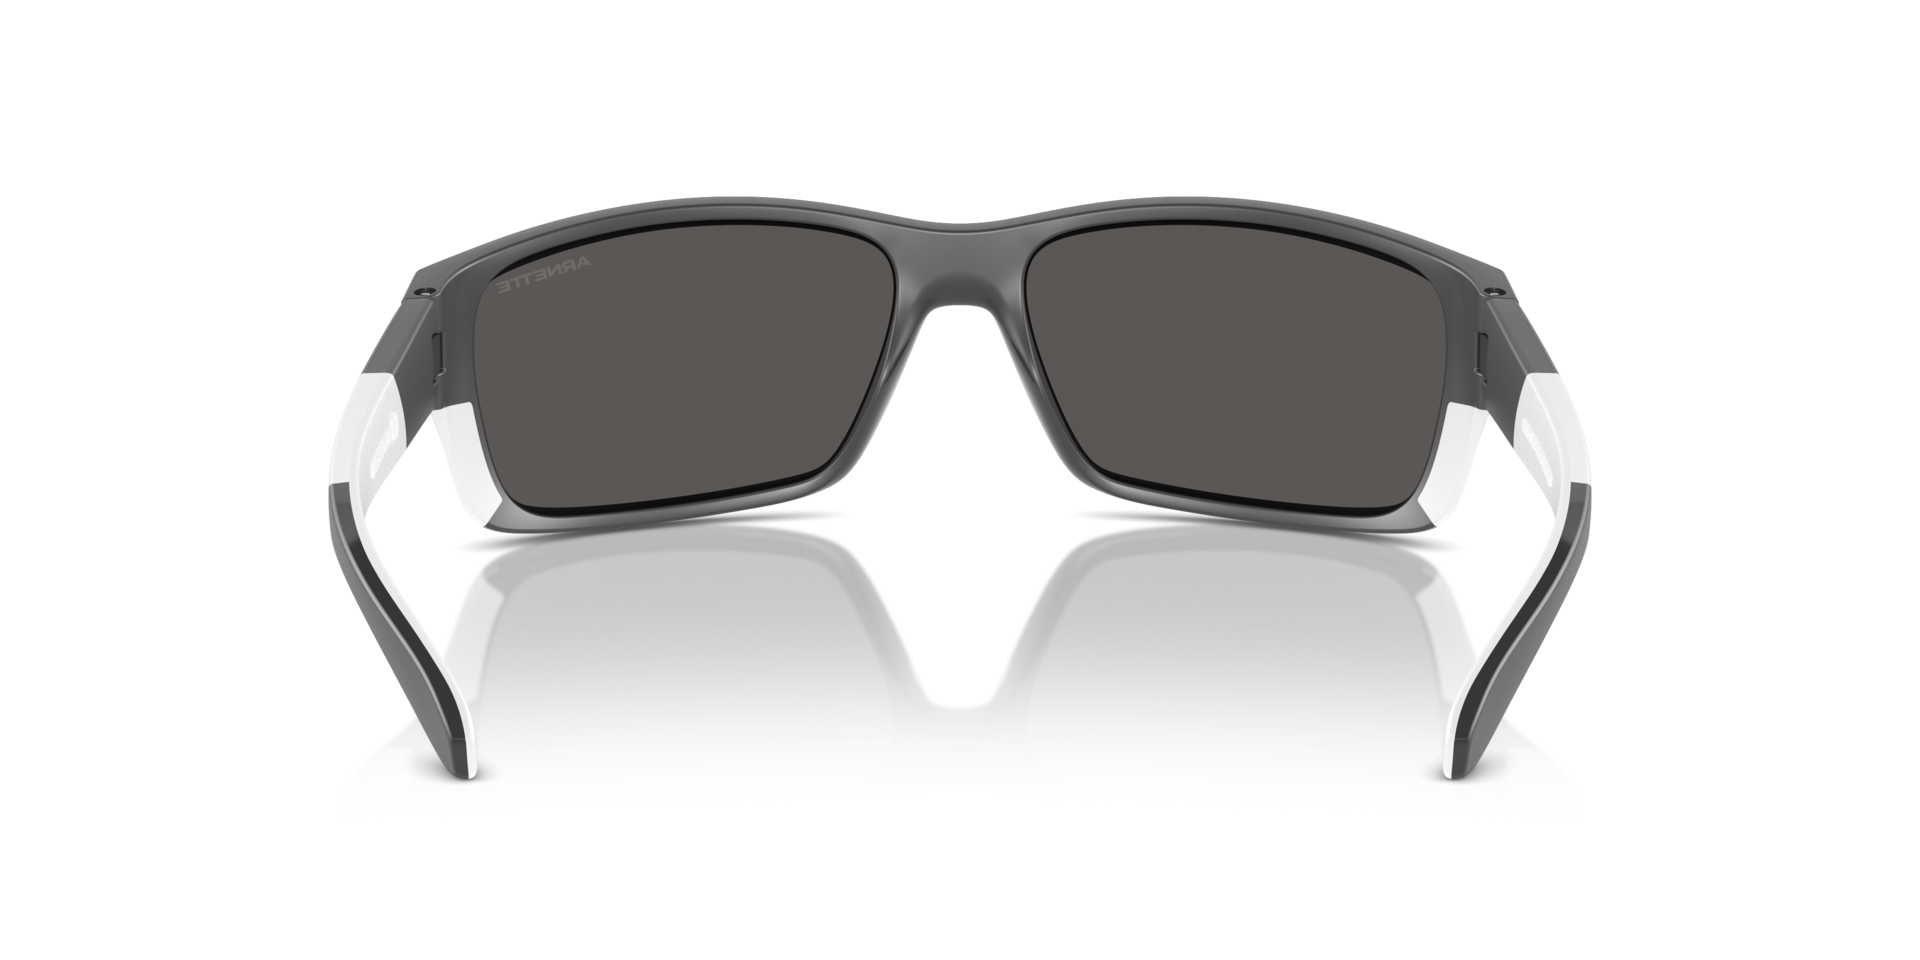 Das Bild zeigt die Sonnenbrille AN4336 284187 von der Marke Arnette in schwarz/weiß.